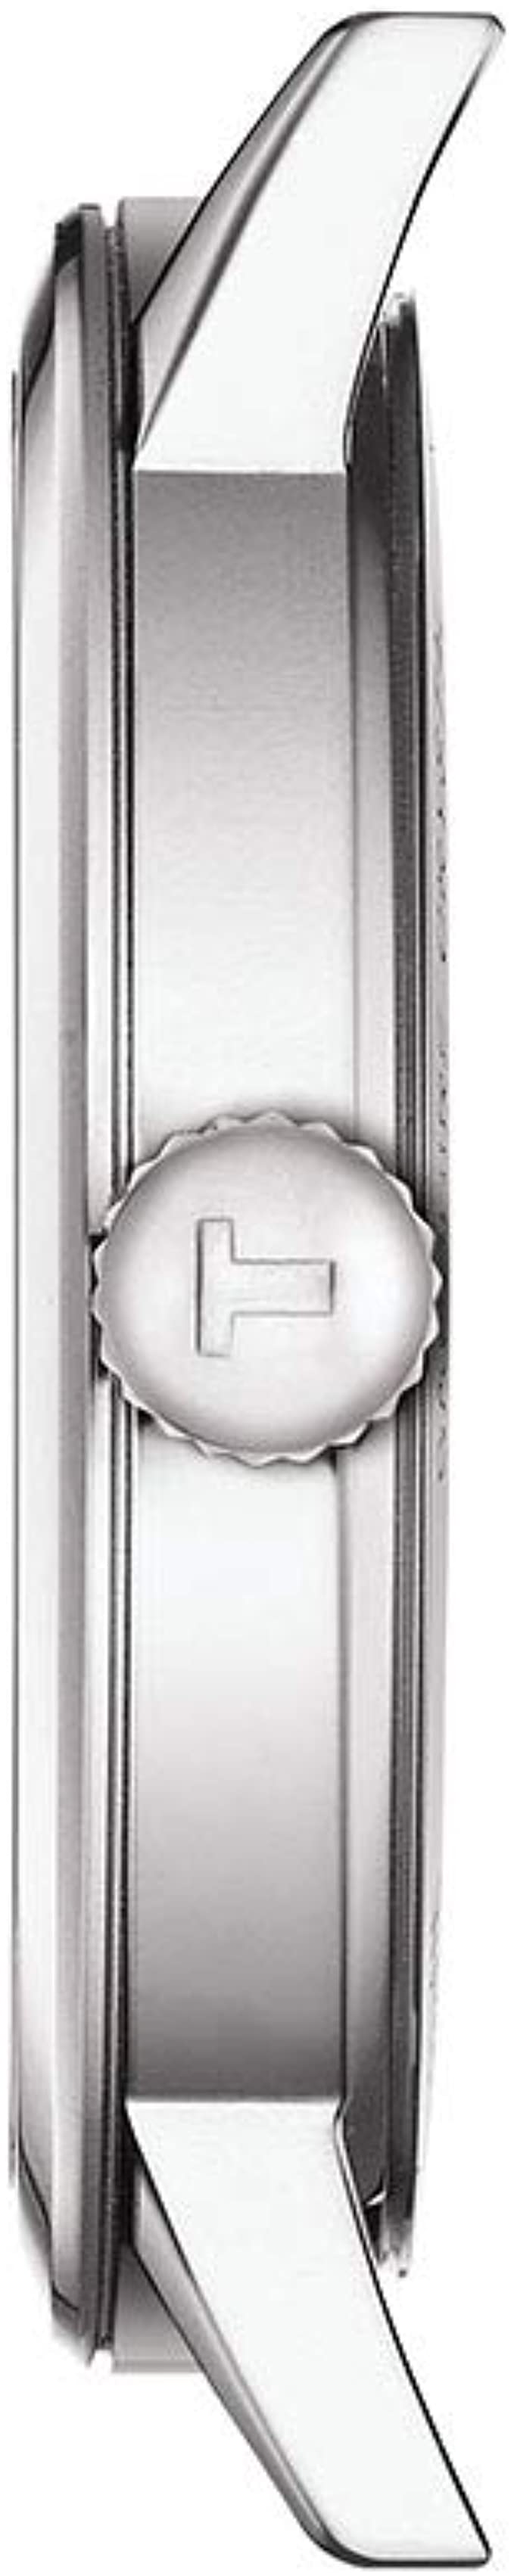  カルバンクライン メンズ 腕時計 アクセサリー Gray Stainless Steel Bracelet Watch 43mm Grey